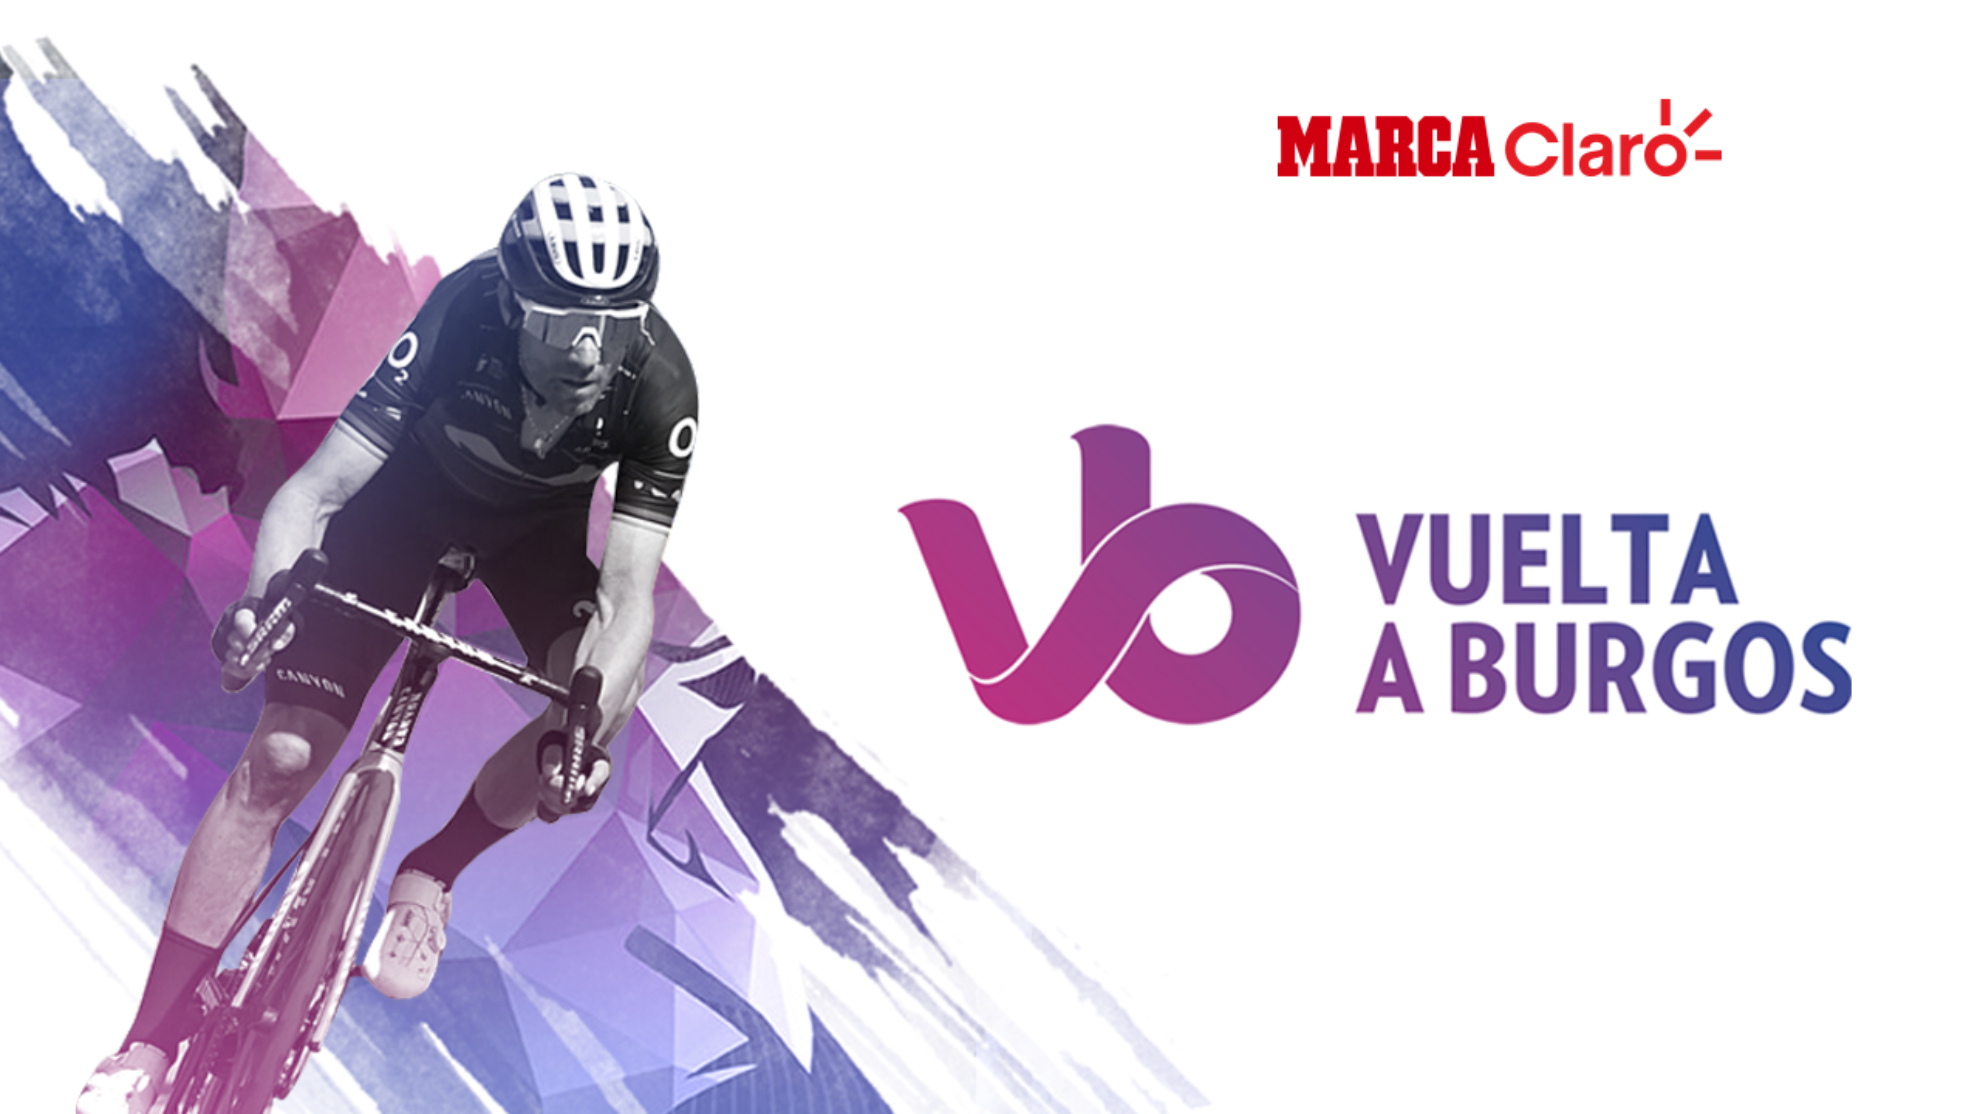 Vuelta a Burgos, etapa 5: resumen y clasificaciones tras la última parte de la carrera española